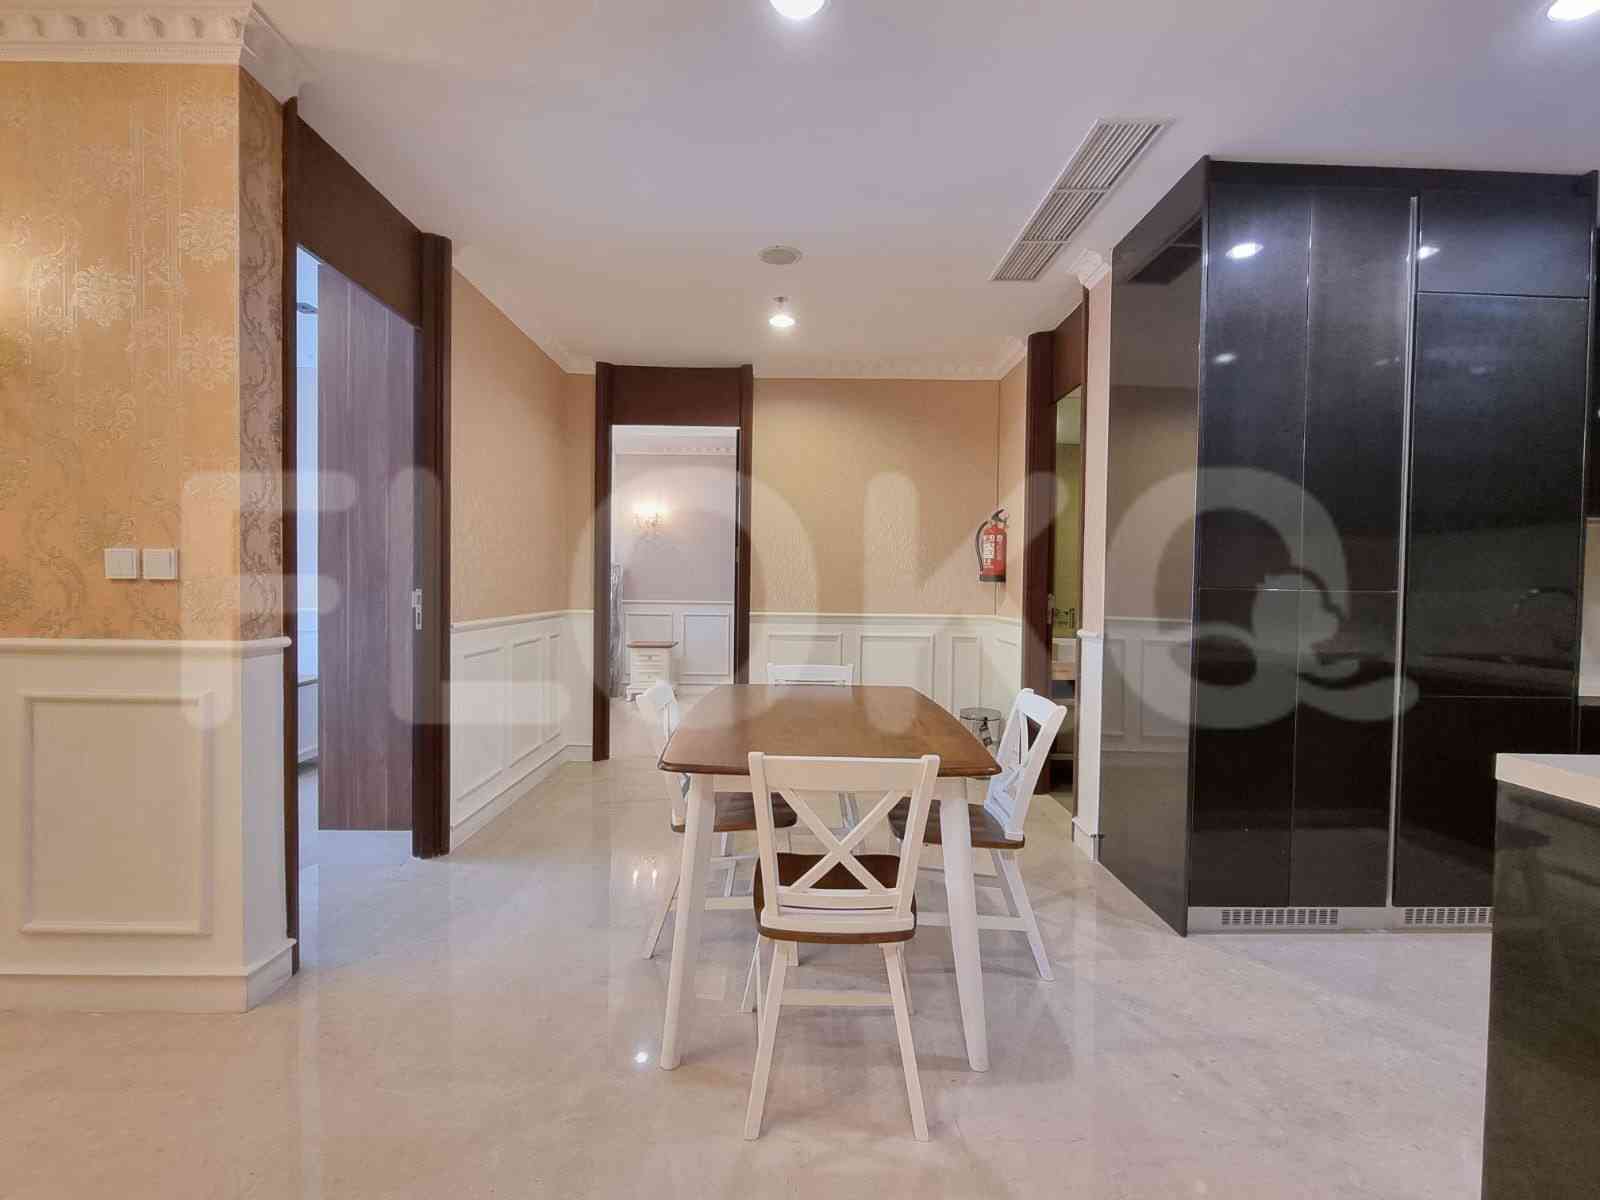 2 Bedroom on 17th Floor for Rent in Pondok Indah Residence - fpo3b2 5